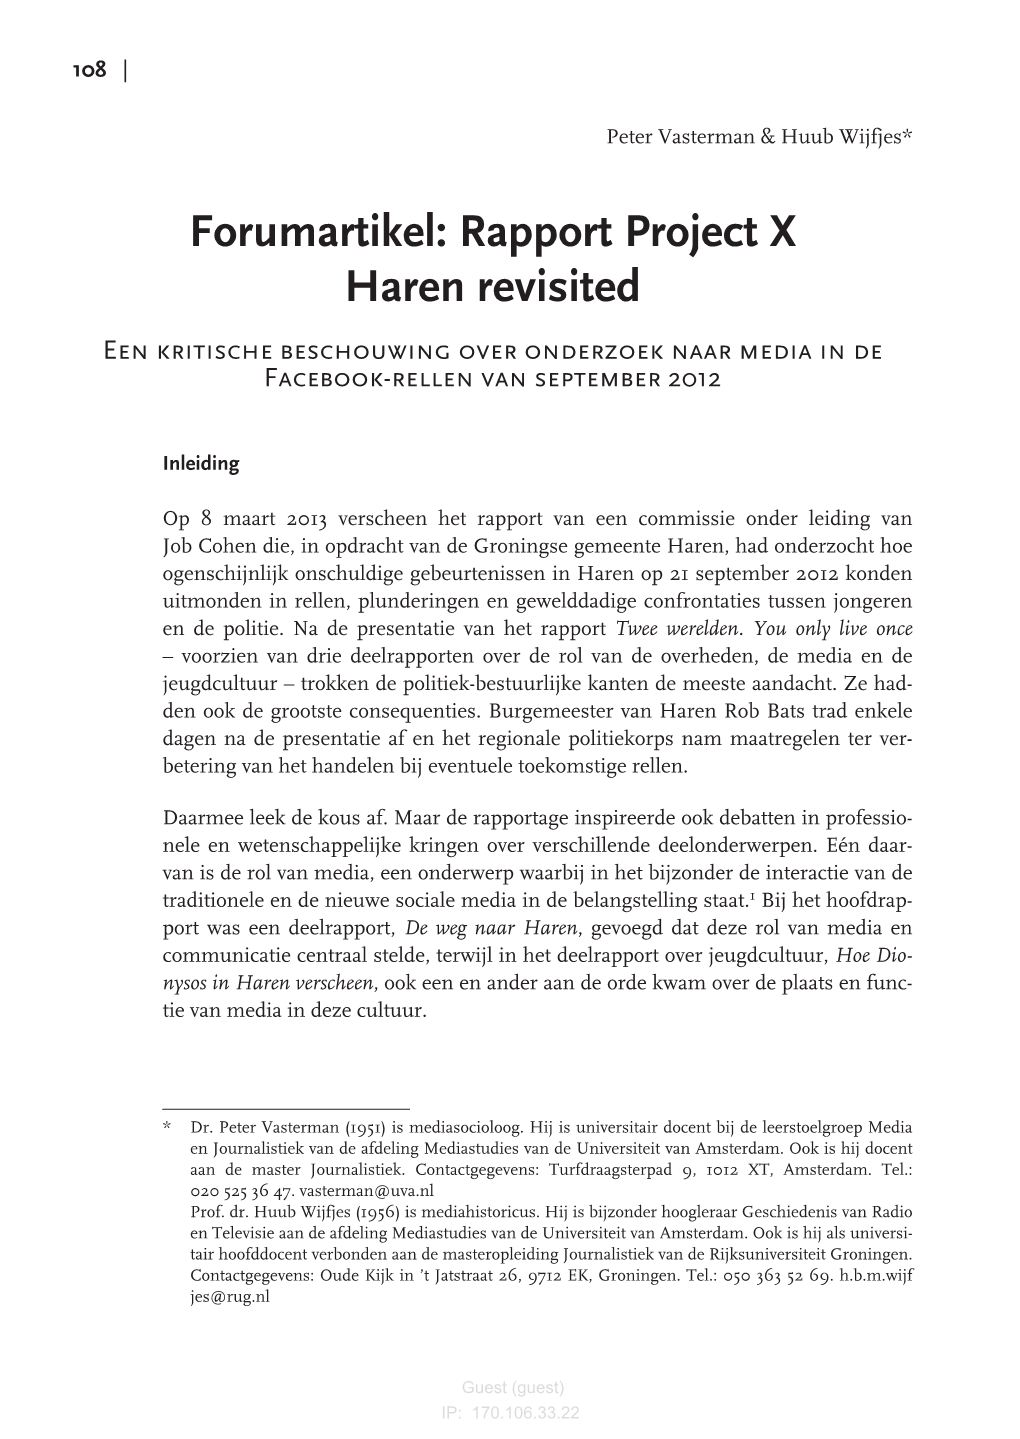 Forumartikel: Rapport Project X Haren Revisited Een Kritische Beschouwing Over Onderzoek Naar Media in De Facebook-Rellen Van September 2012